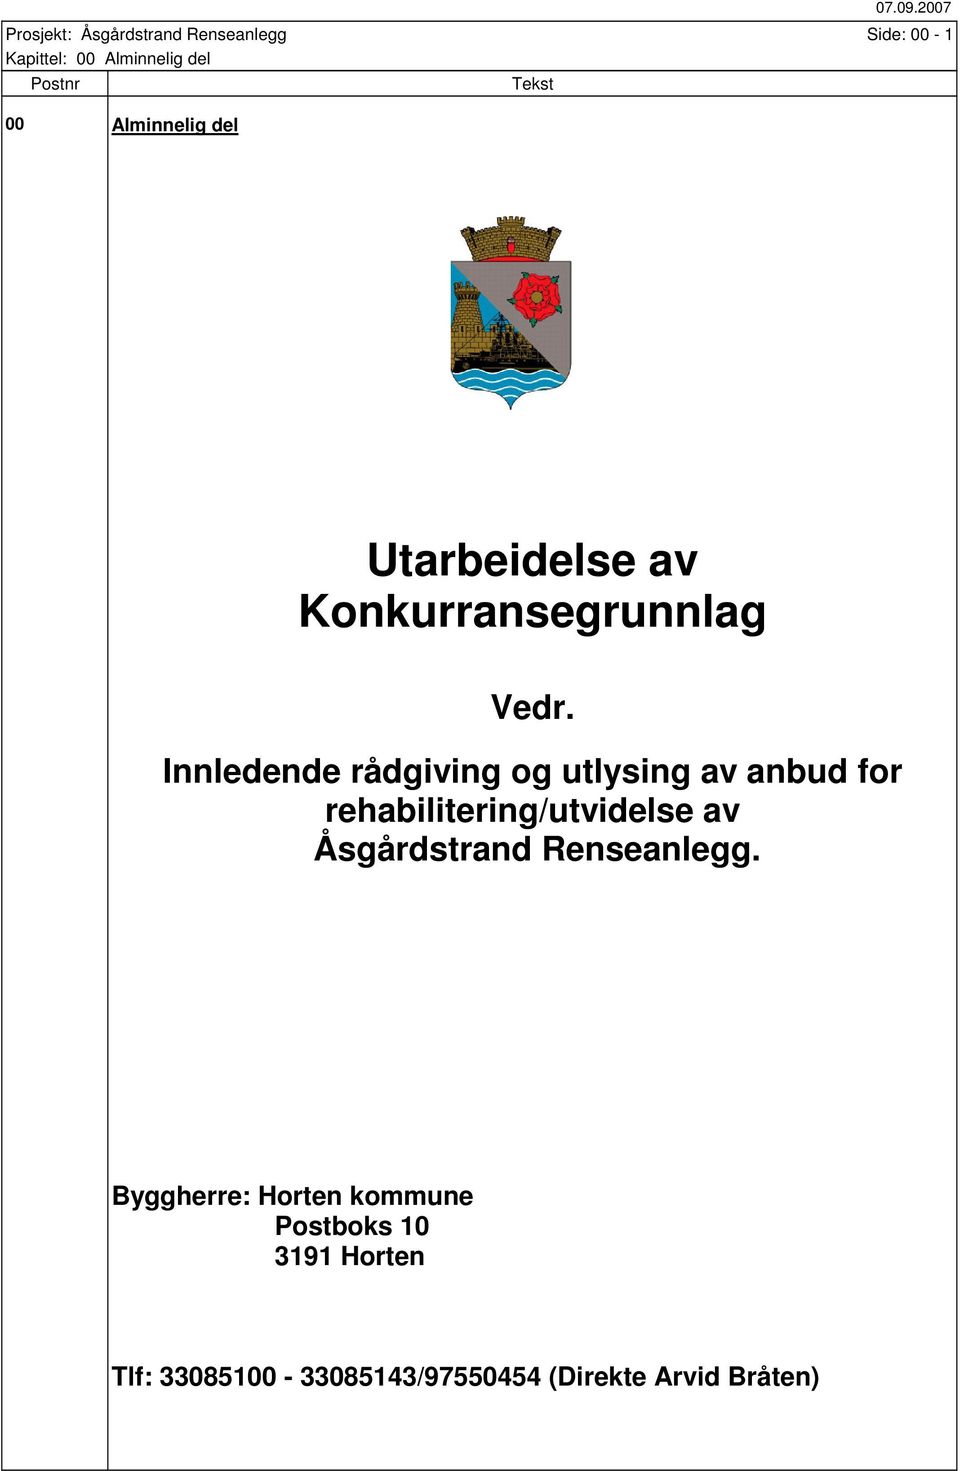 Innledende rådgiving og utlysing av anbud for rehabilitering/utvidelse av Åsgårdstrand